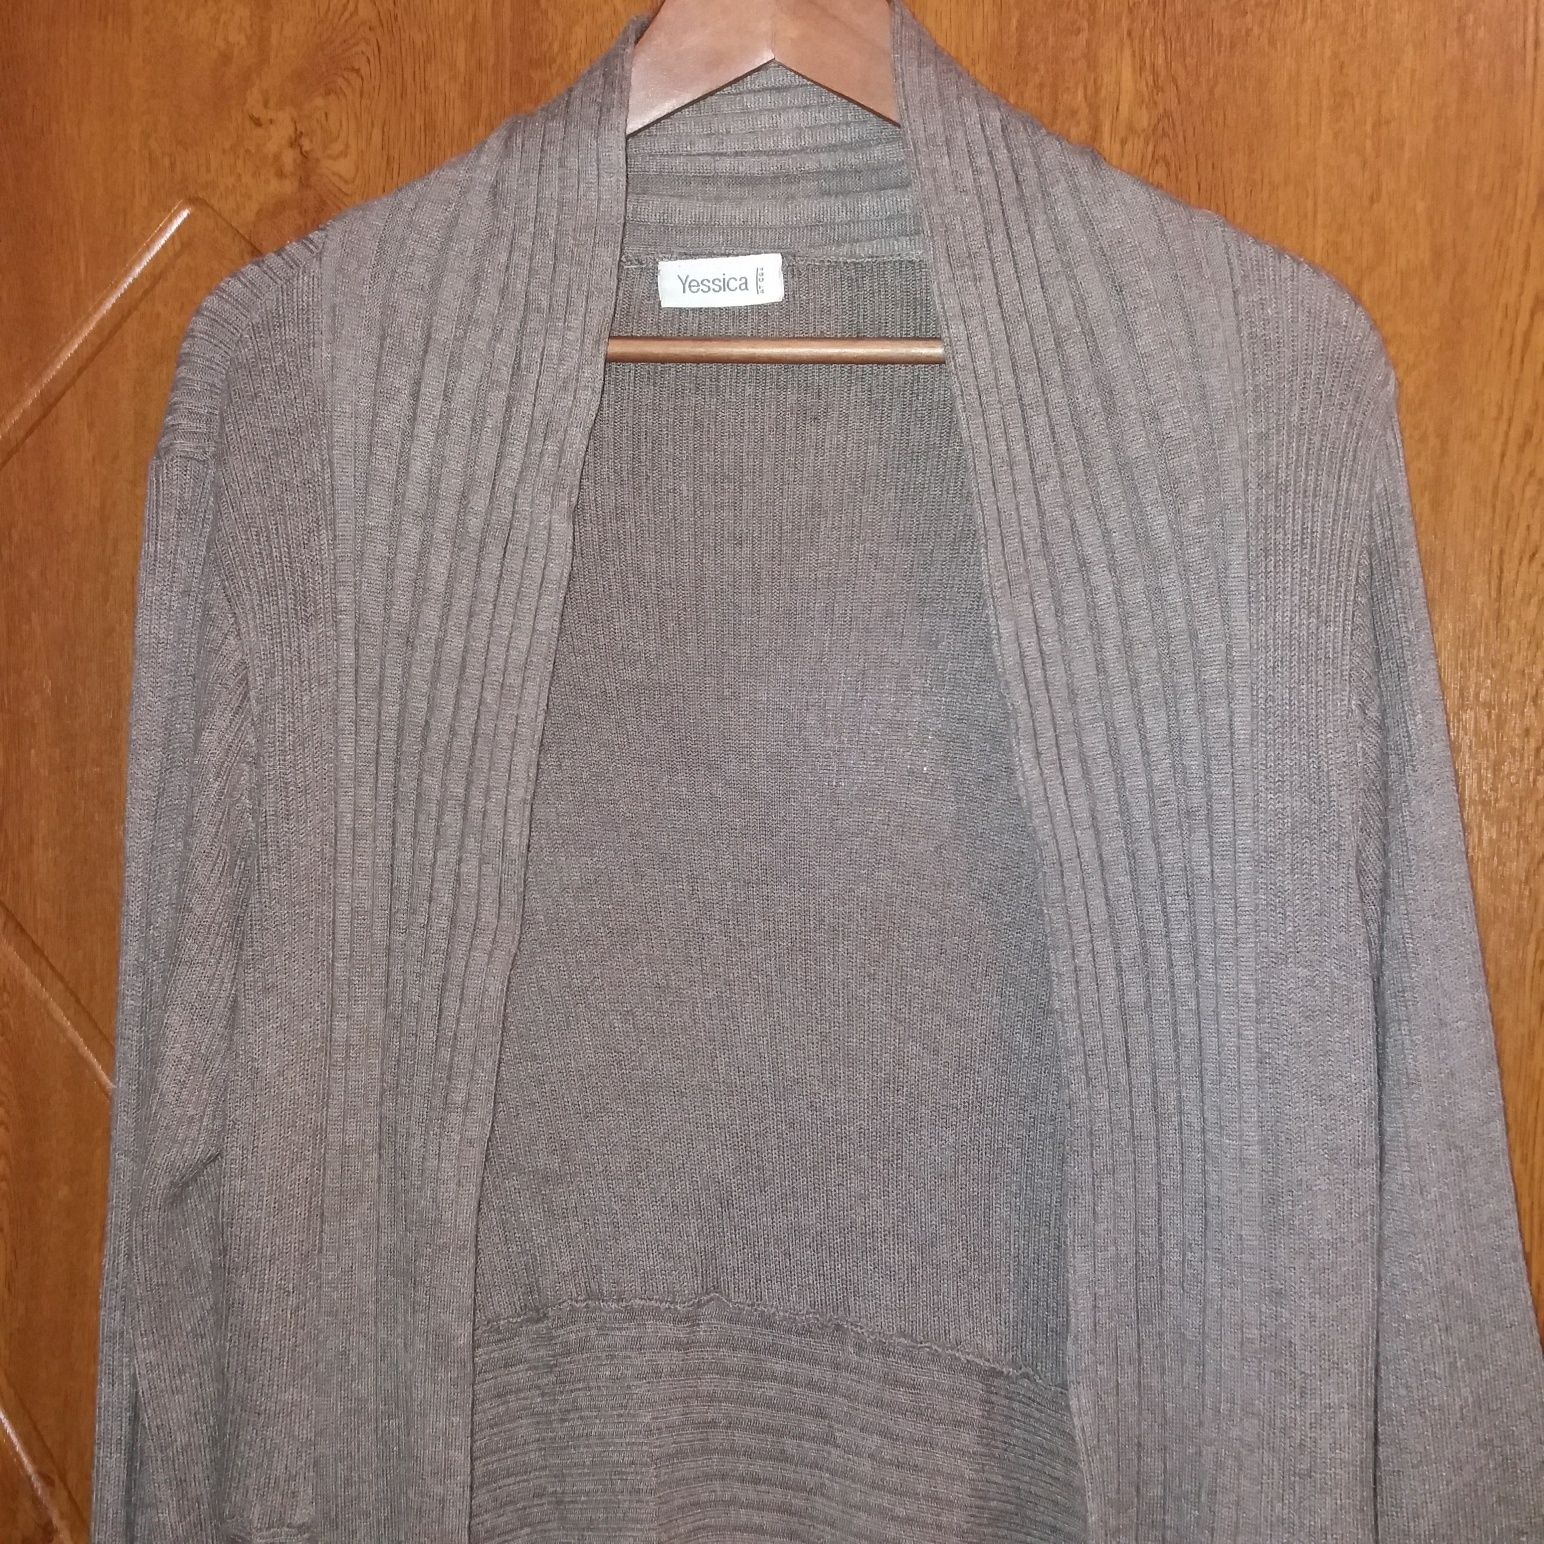 Sweter, długi kardigan beżowy rozm. XL